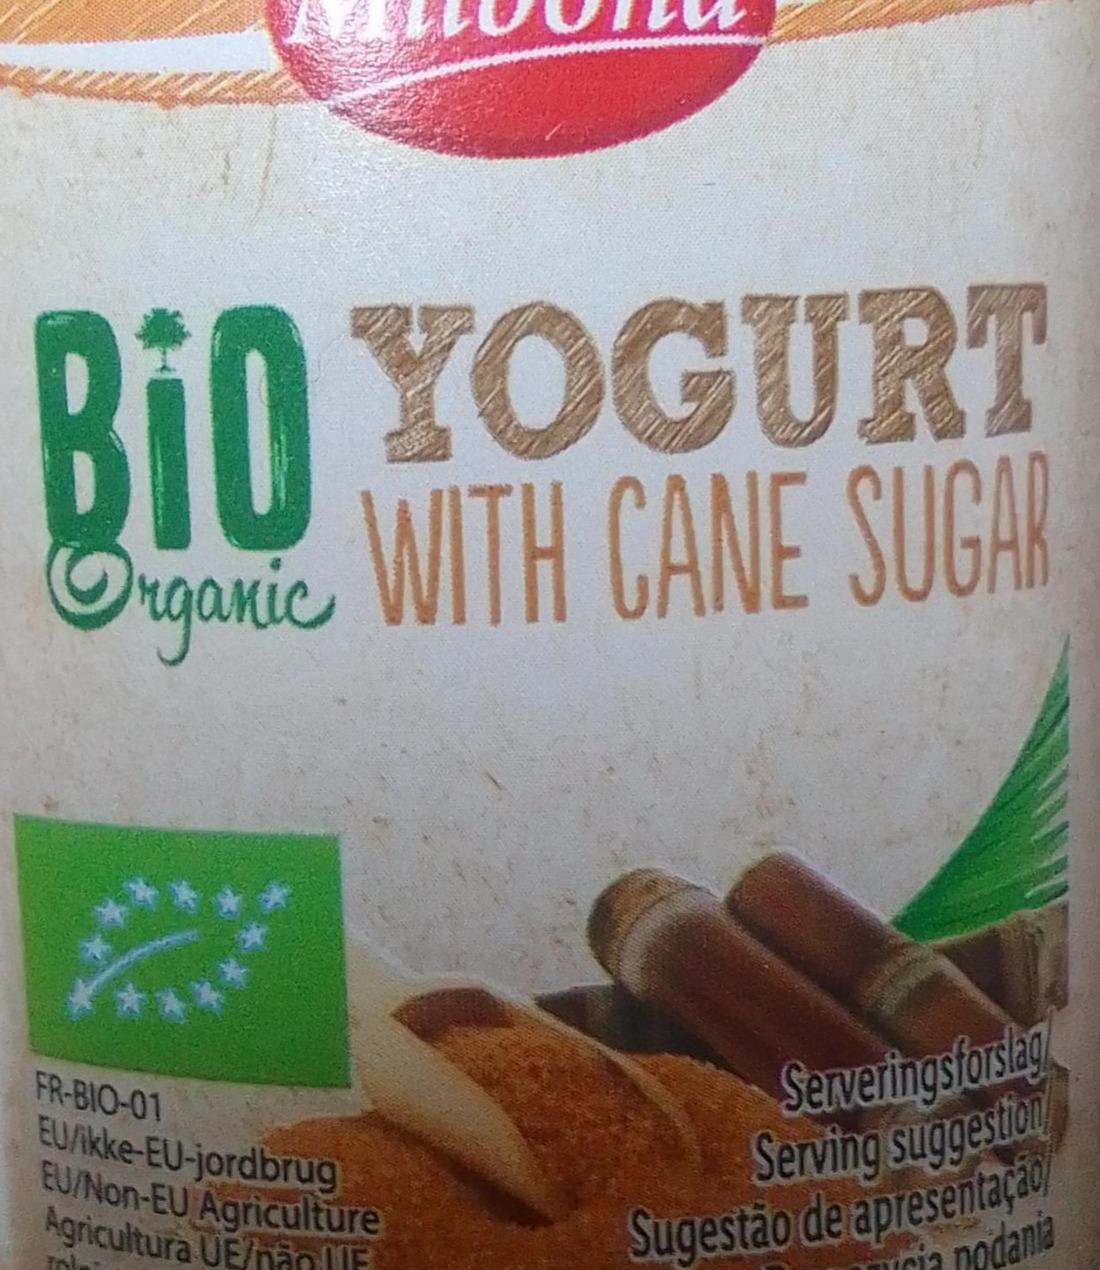 Фото - Біо йогурт з тростинним цукром Milbona